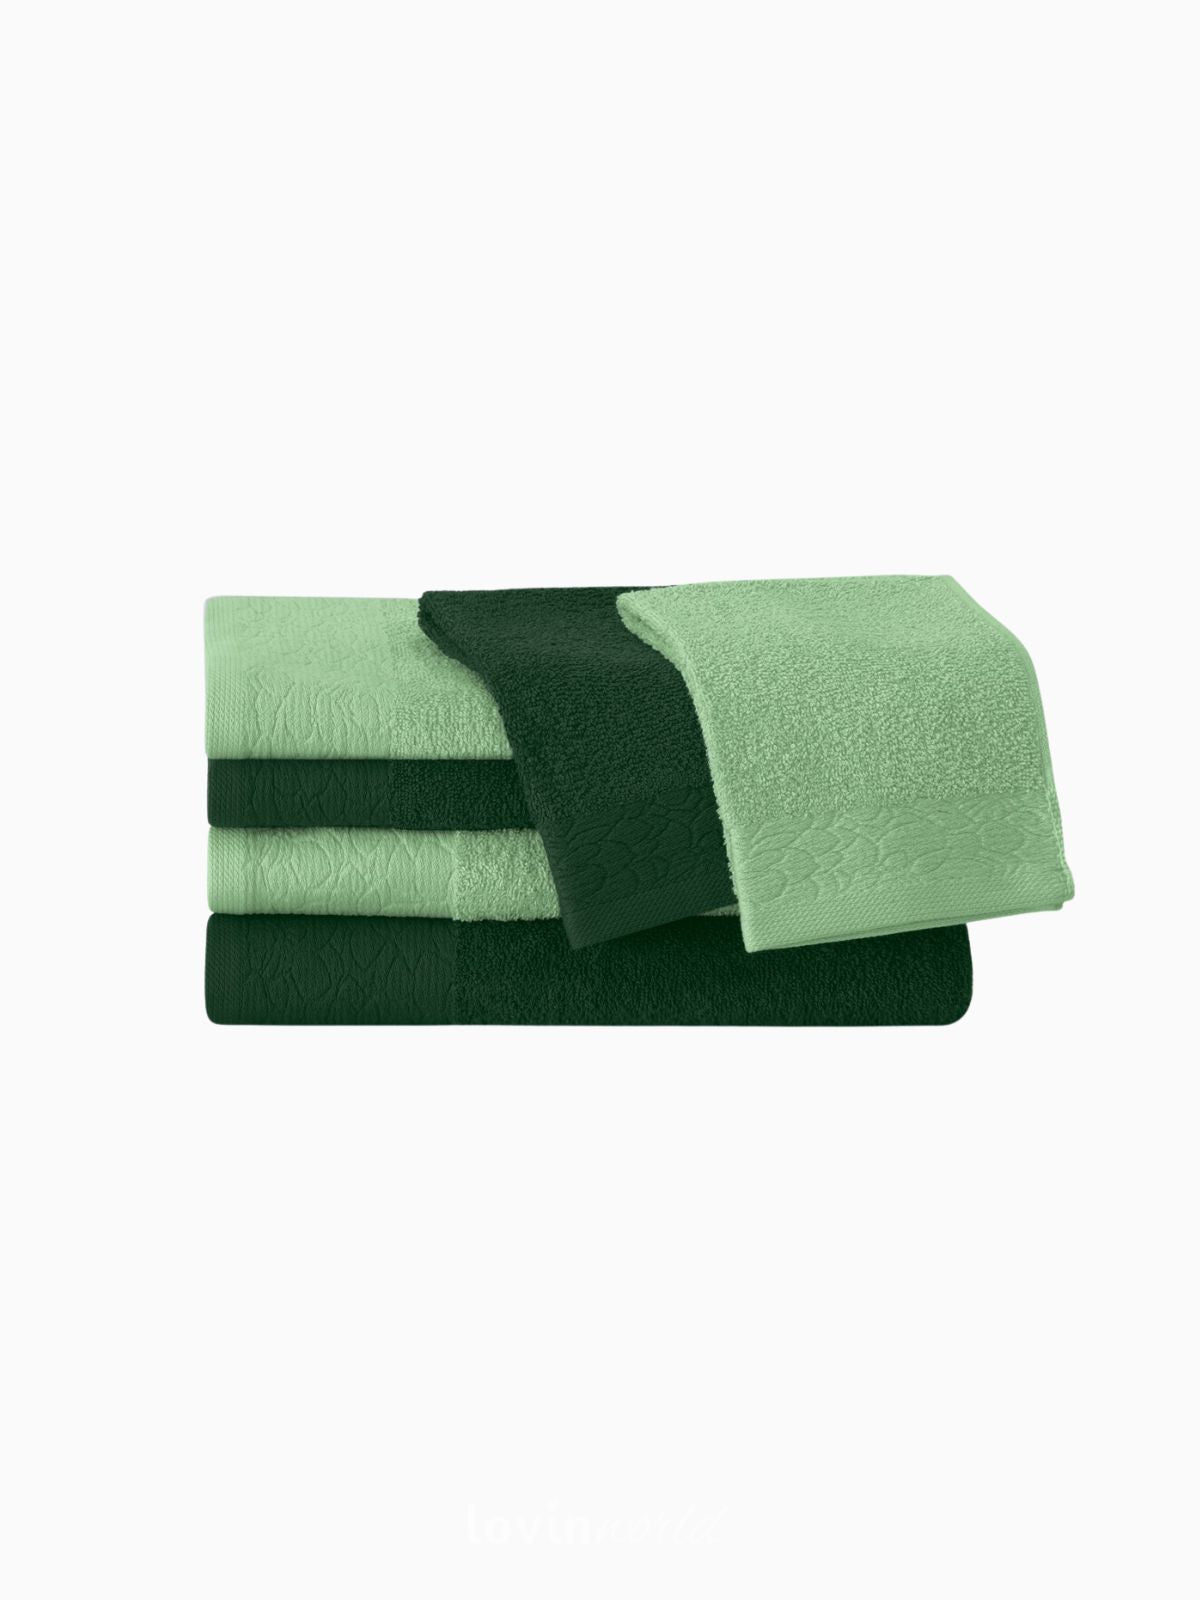 Set 6 Asciugamani da bagno Flos in 100% cotone, colore verde chiaro e scuro-2